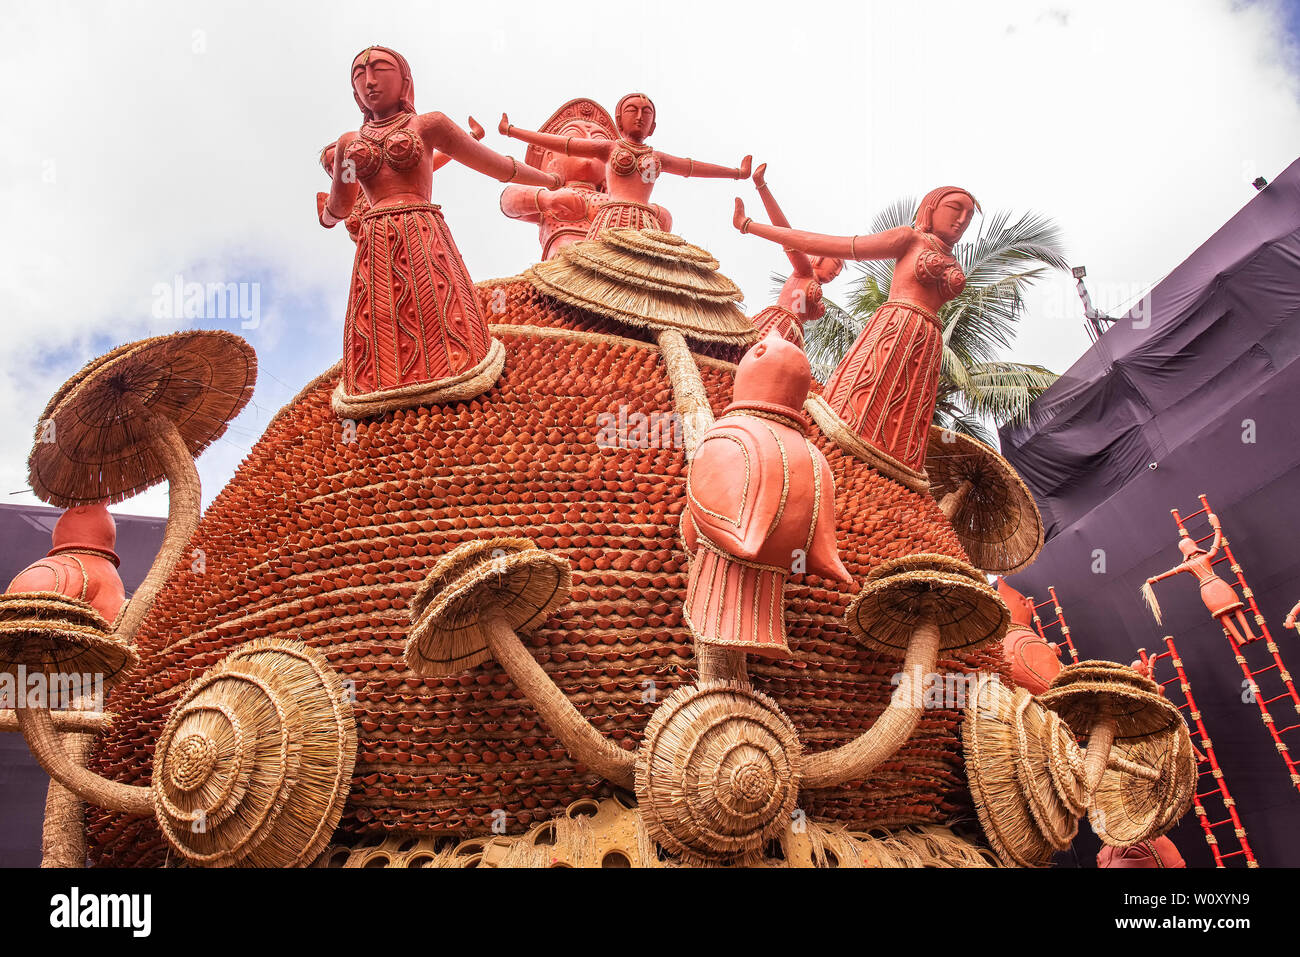 L'agriculture ,danse,par ,les femmes rurales,le stockage,gains ,,en,tous les silos,en terre cuite,forme, un thème de présentation,,adorer,Déesse Durga.Kolkata, Inde. Banque D'Images